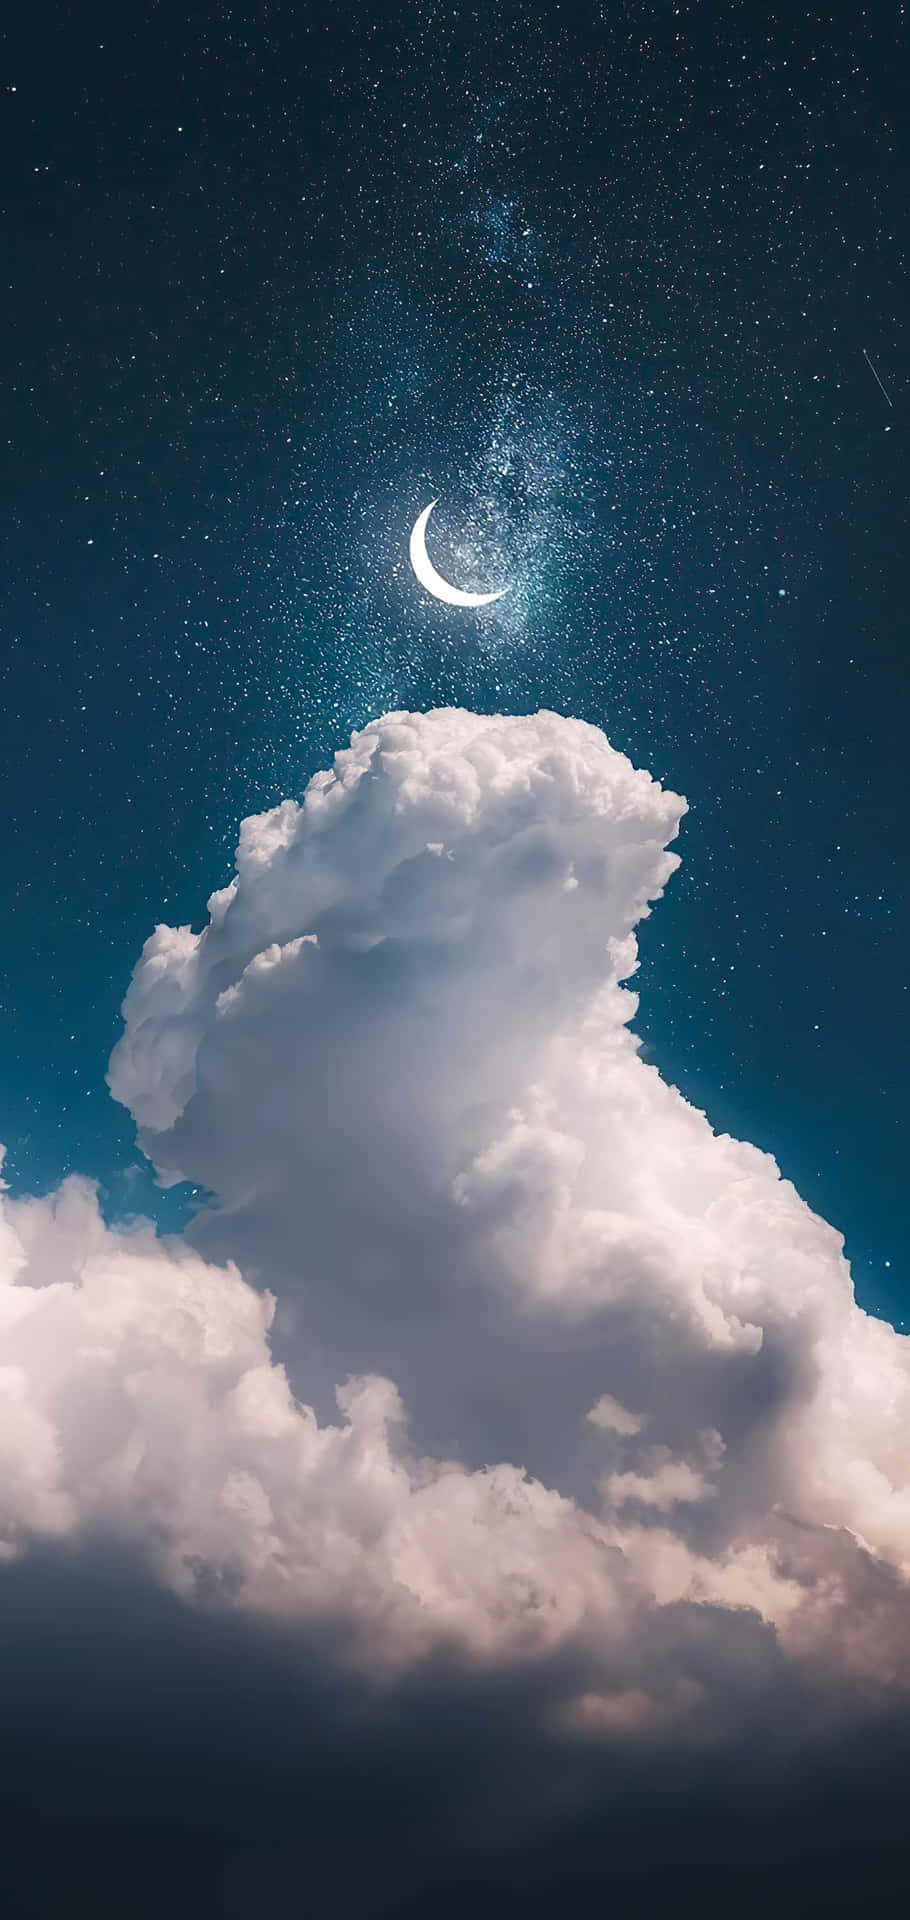 Immaginedel Cielo Notturno Coperto Di Nuvole Con La Luna